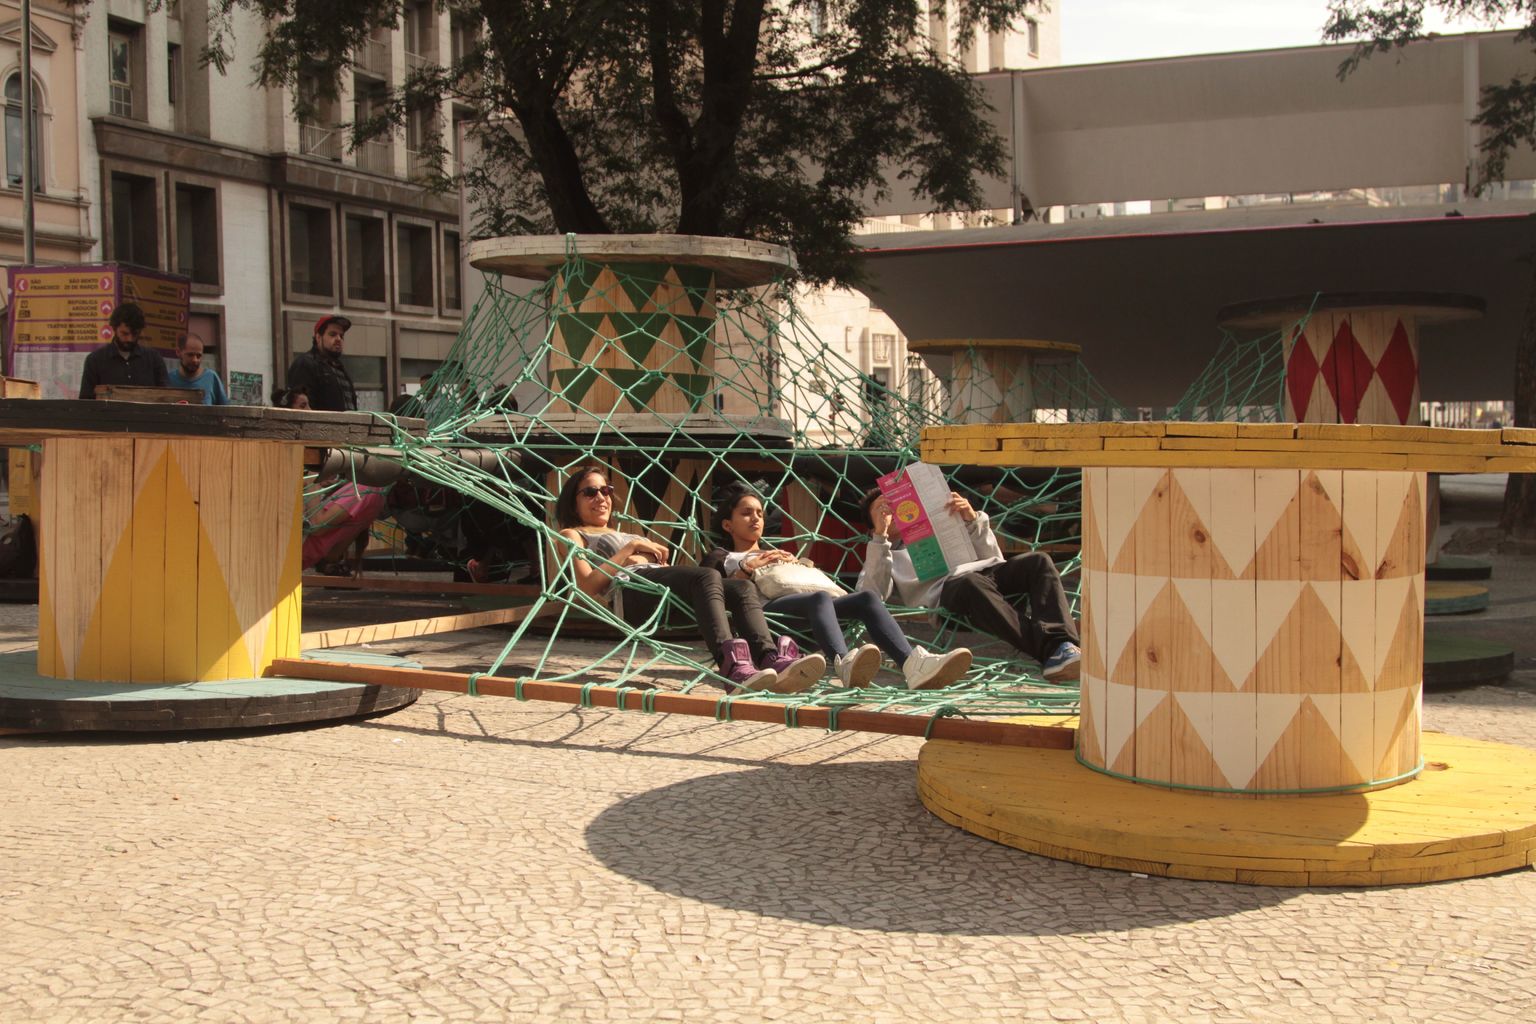 különleges játszótér - Sao Paulo - Brazília